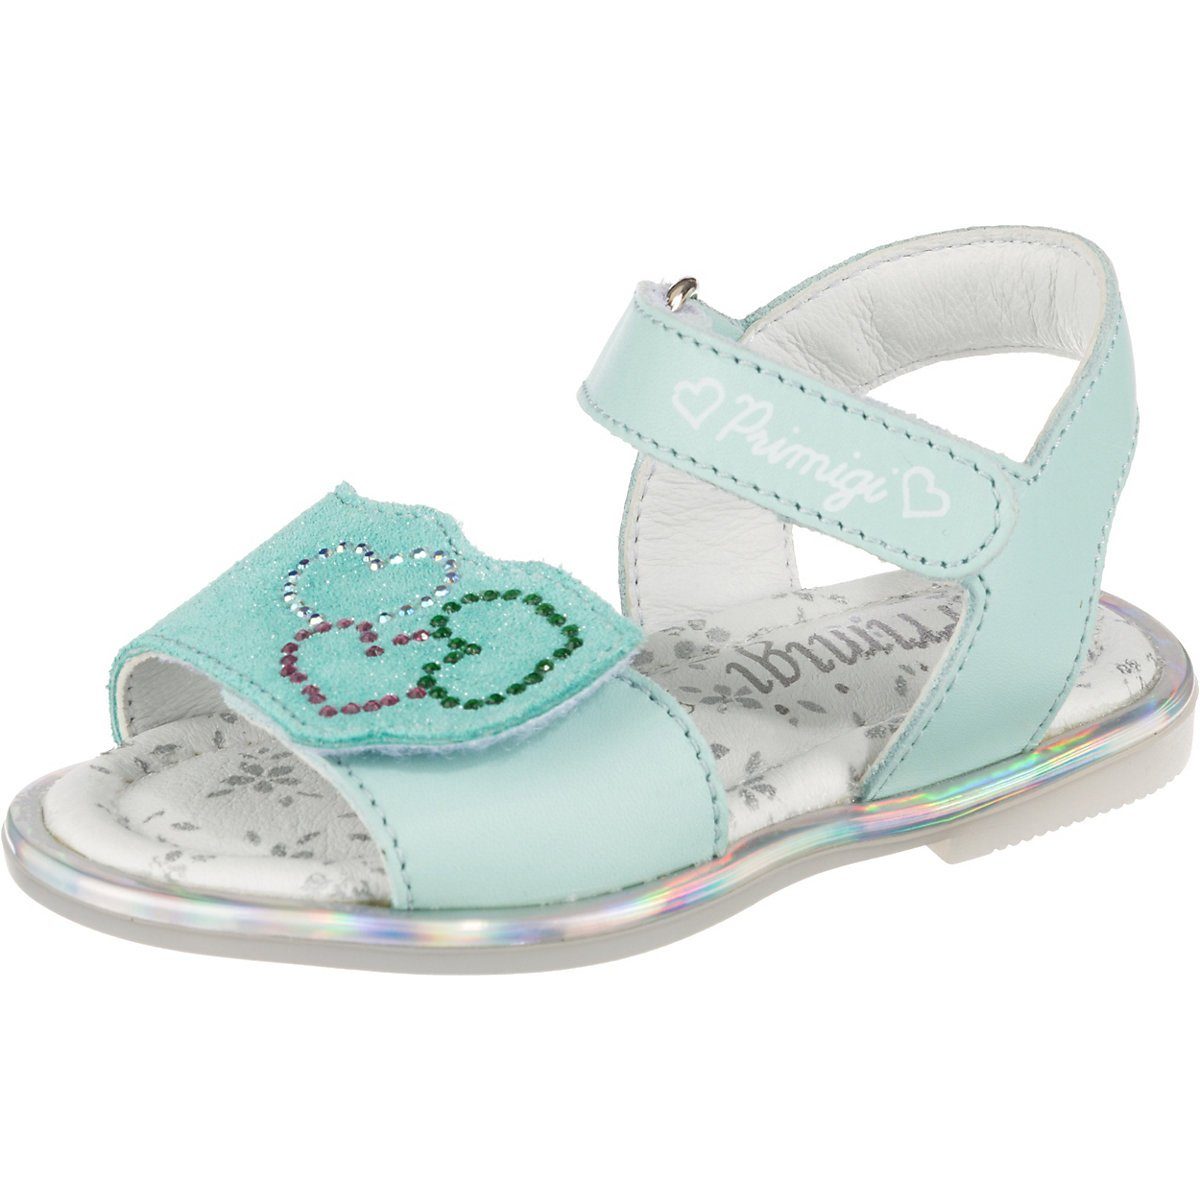 Primigi »Baby Sandalen für Mädchen« Sandale kaufen | OTTO